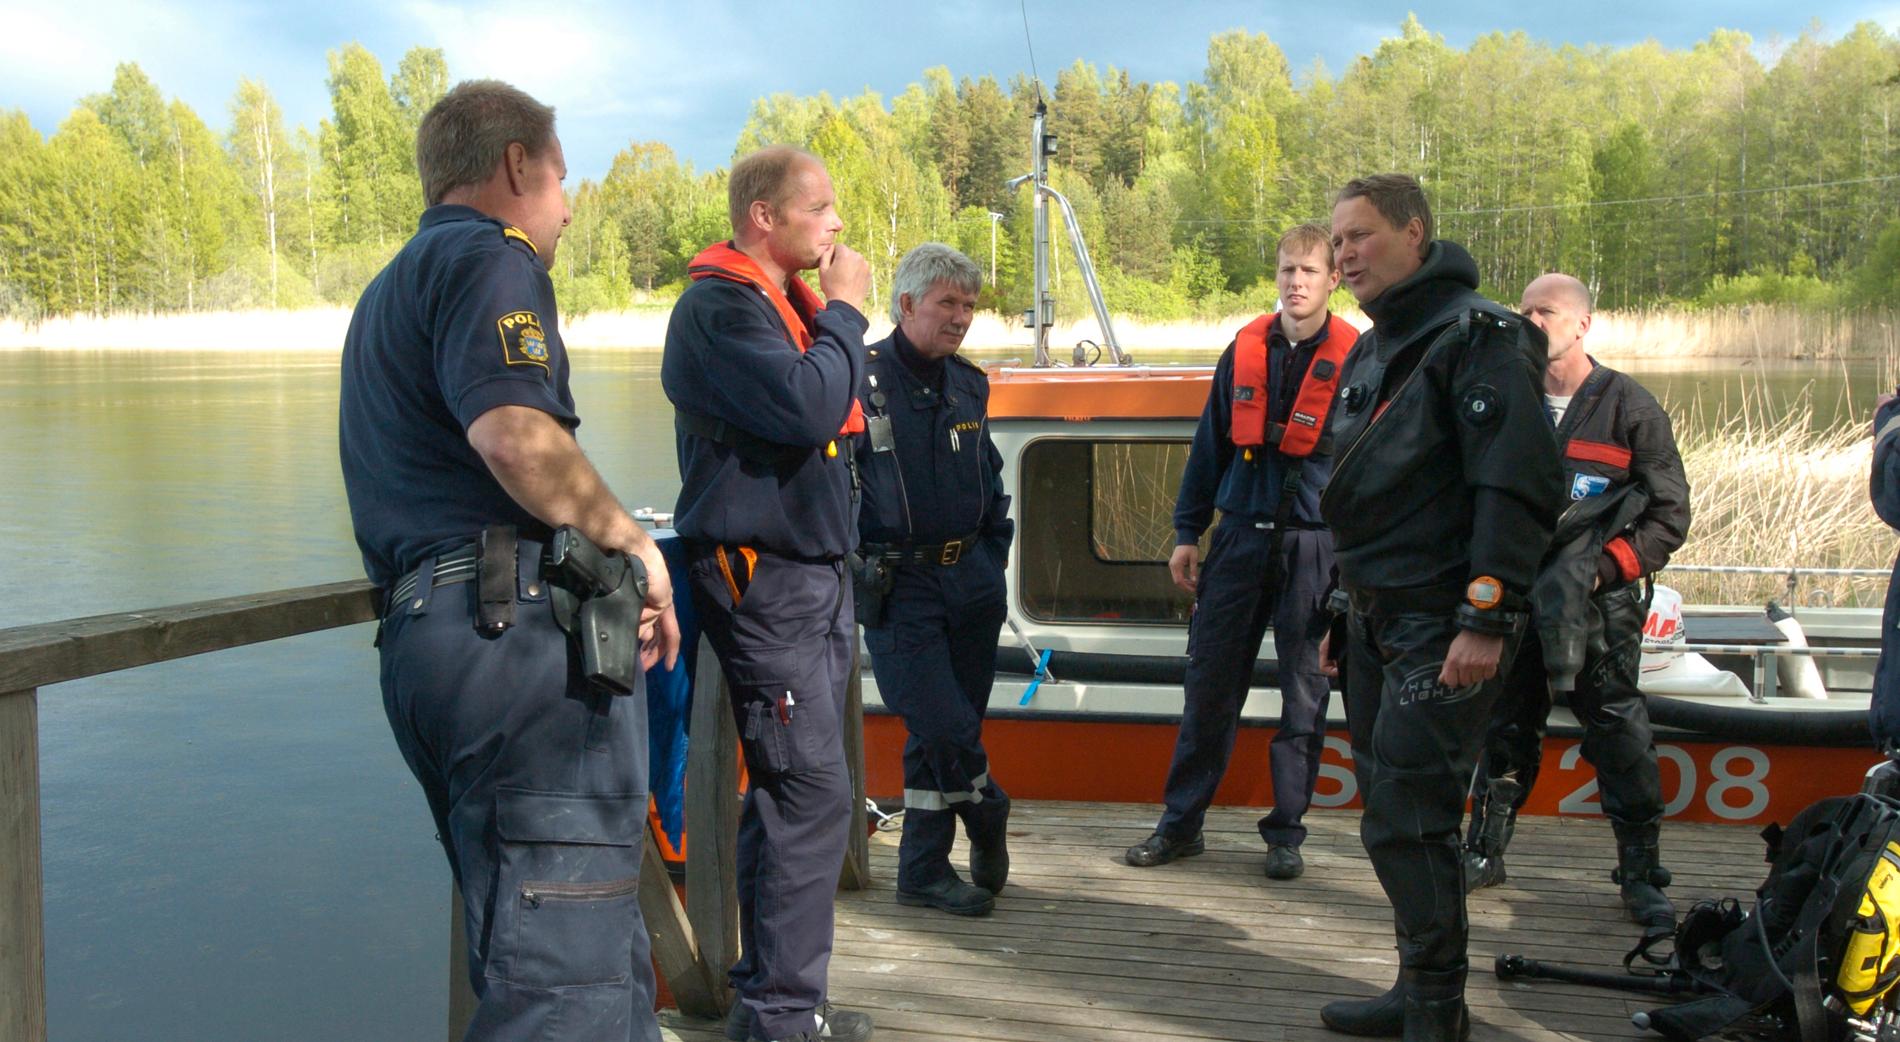 Efter ett tips om att ”Kjelle-Blues” skulle ha dödats och hans kropp dumpats i en sjö i närheten av Sandviken gjorde polisen år 2010 dykningar i området.